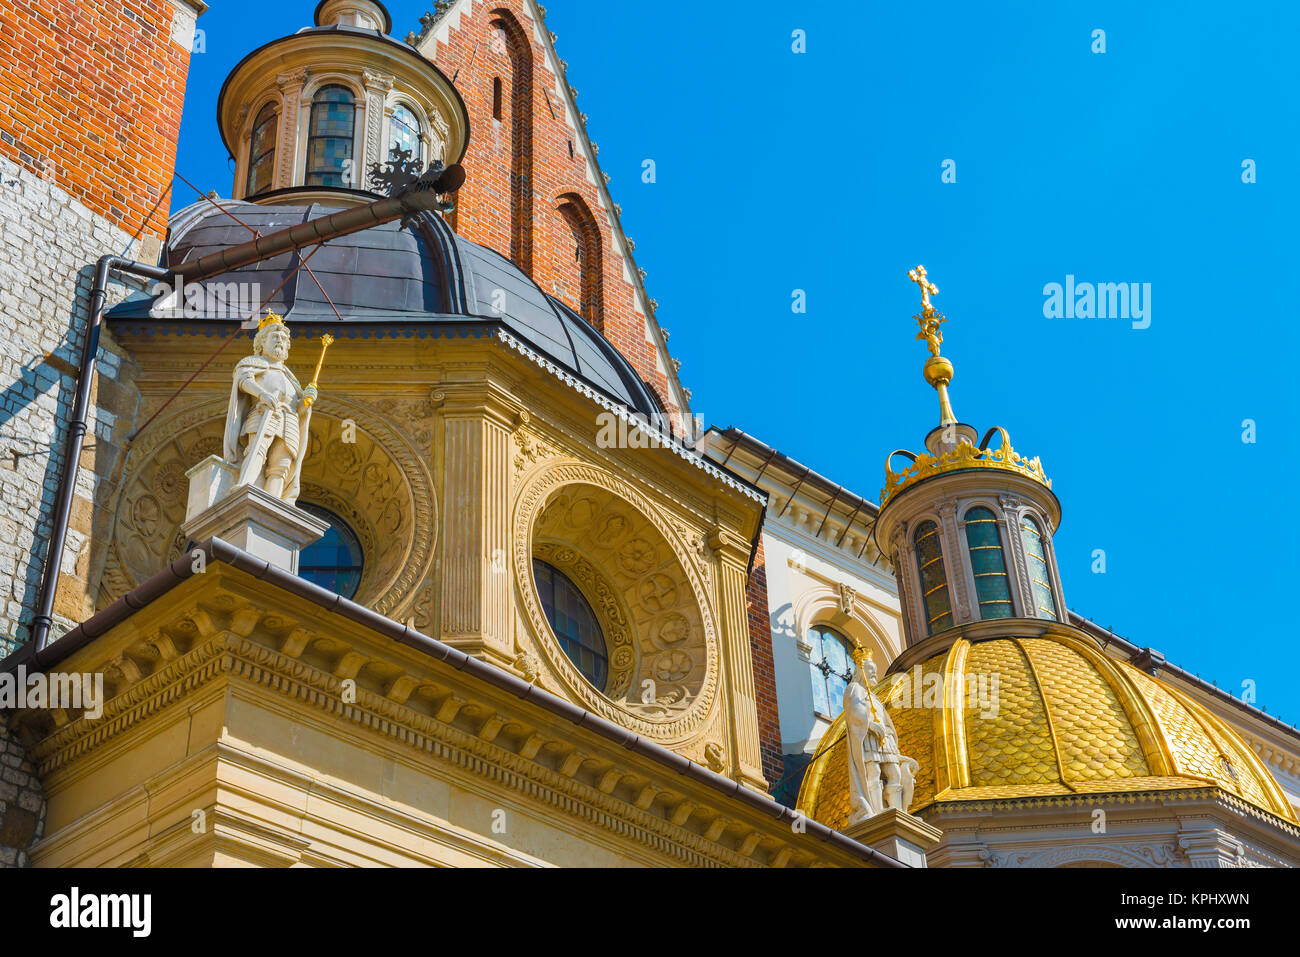 La Catedral de Cracovia, el detalle de las cúpulas gemelas y las estatuas de los Apóstoles sobre la capilla de Segismundo en el exterior de la Catedral en la colina de Wawel, en Cracovia. Foto de stock